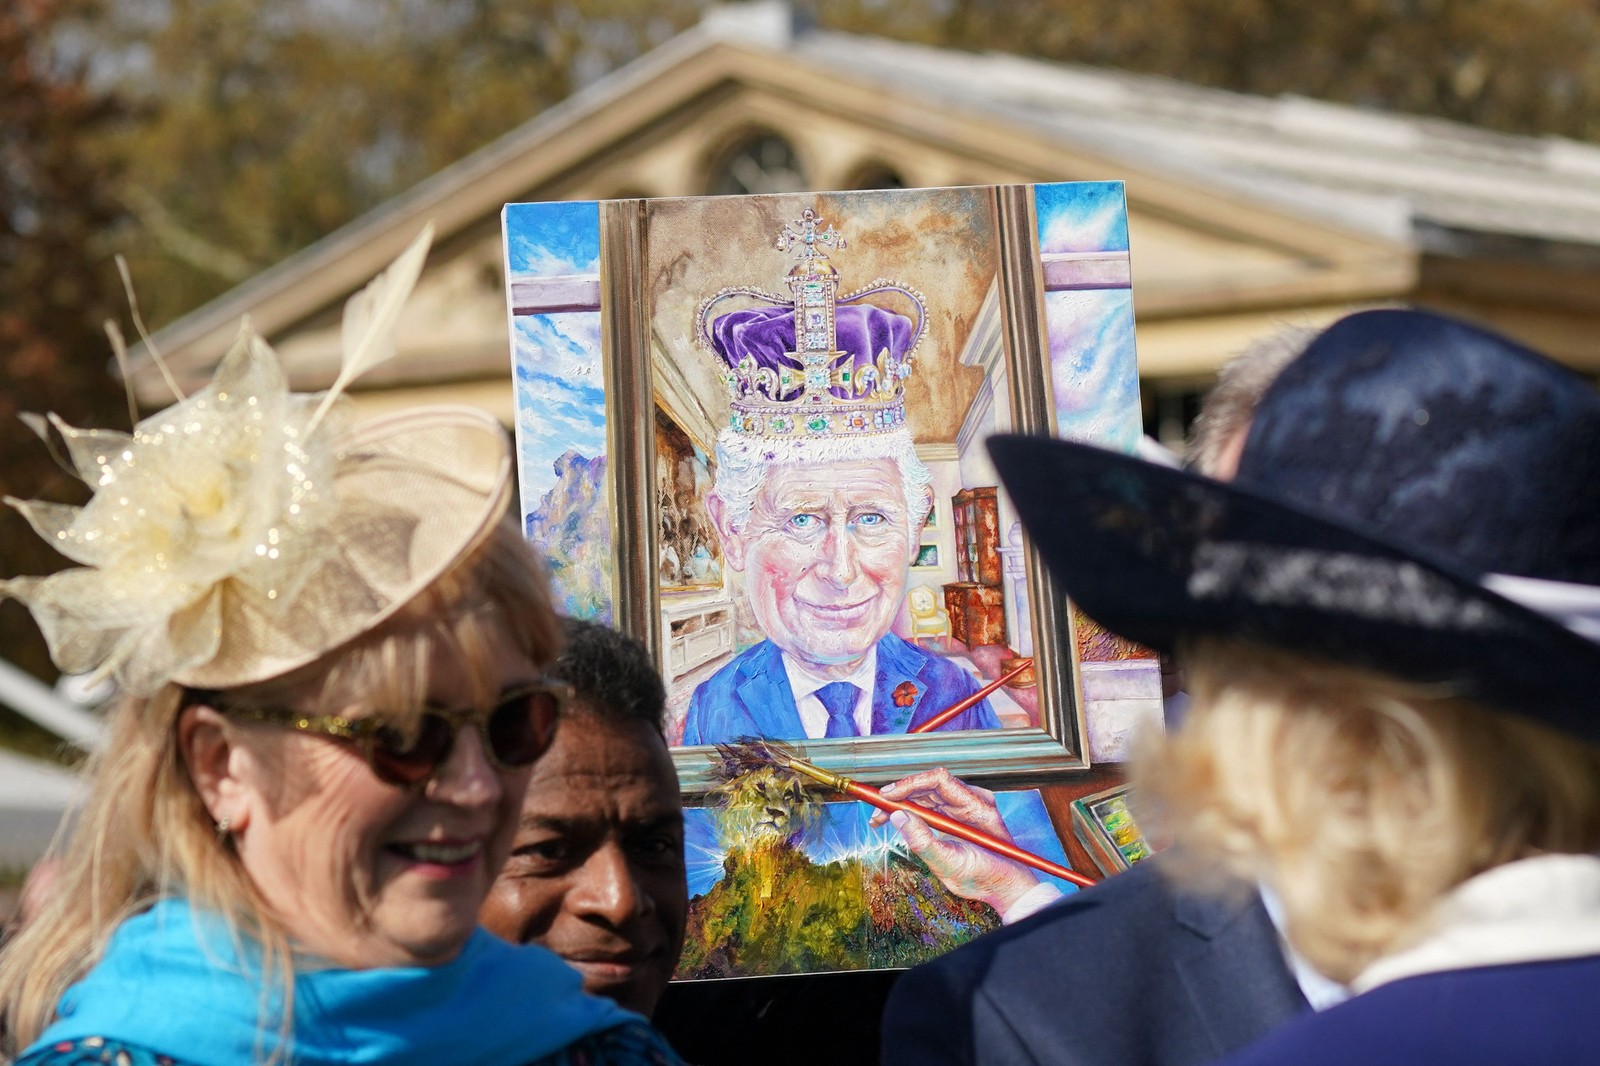 Convidado segura uma pintura representando o rei Charles III, no Palácio de Buckingham, em Londres — Foto: Yui Mok / POOL / AFP